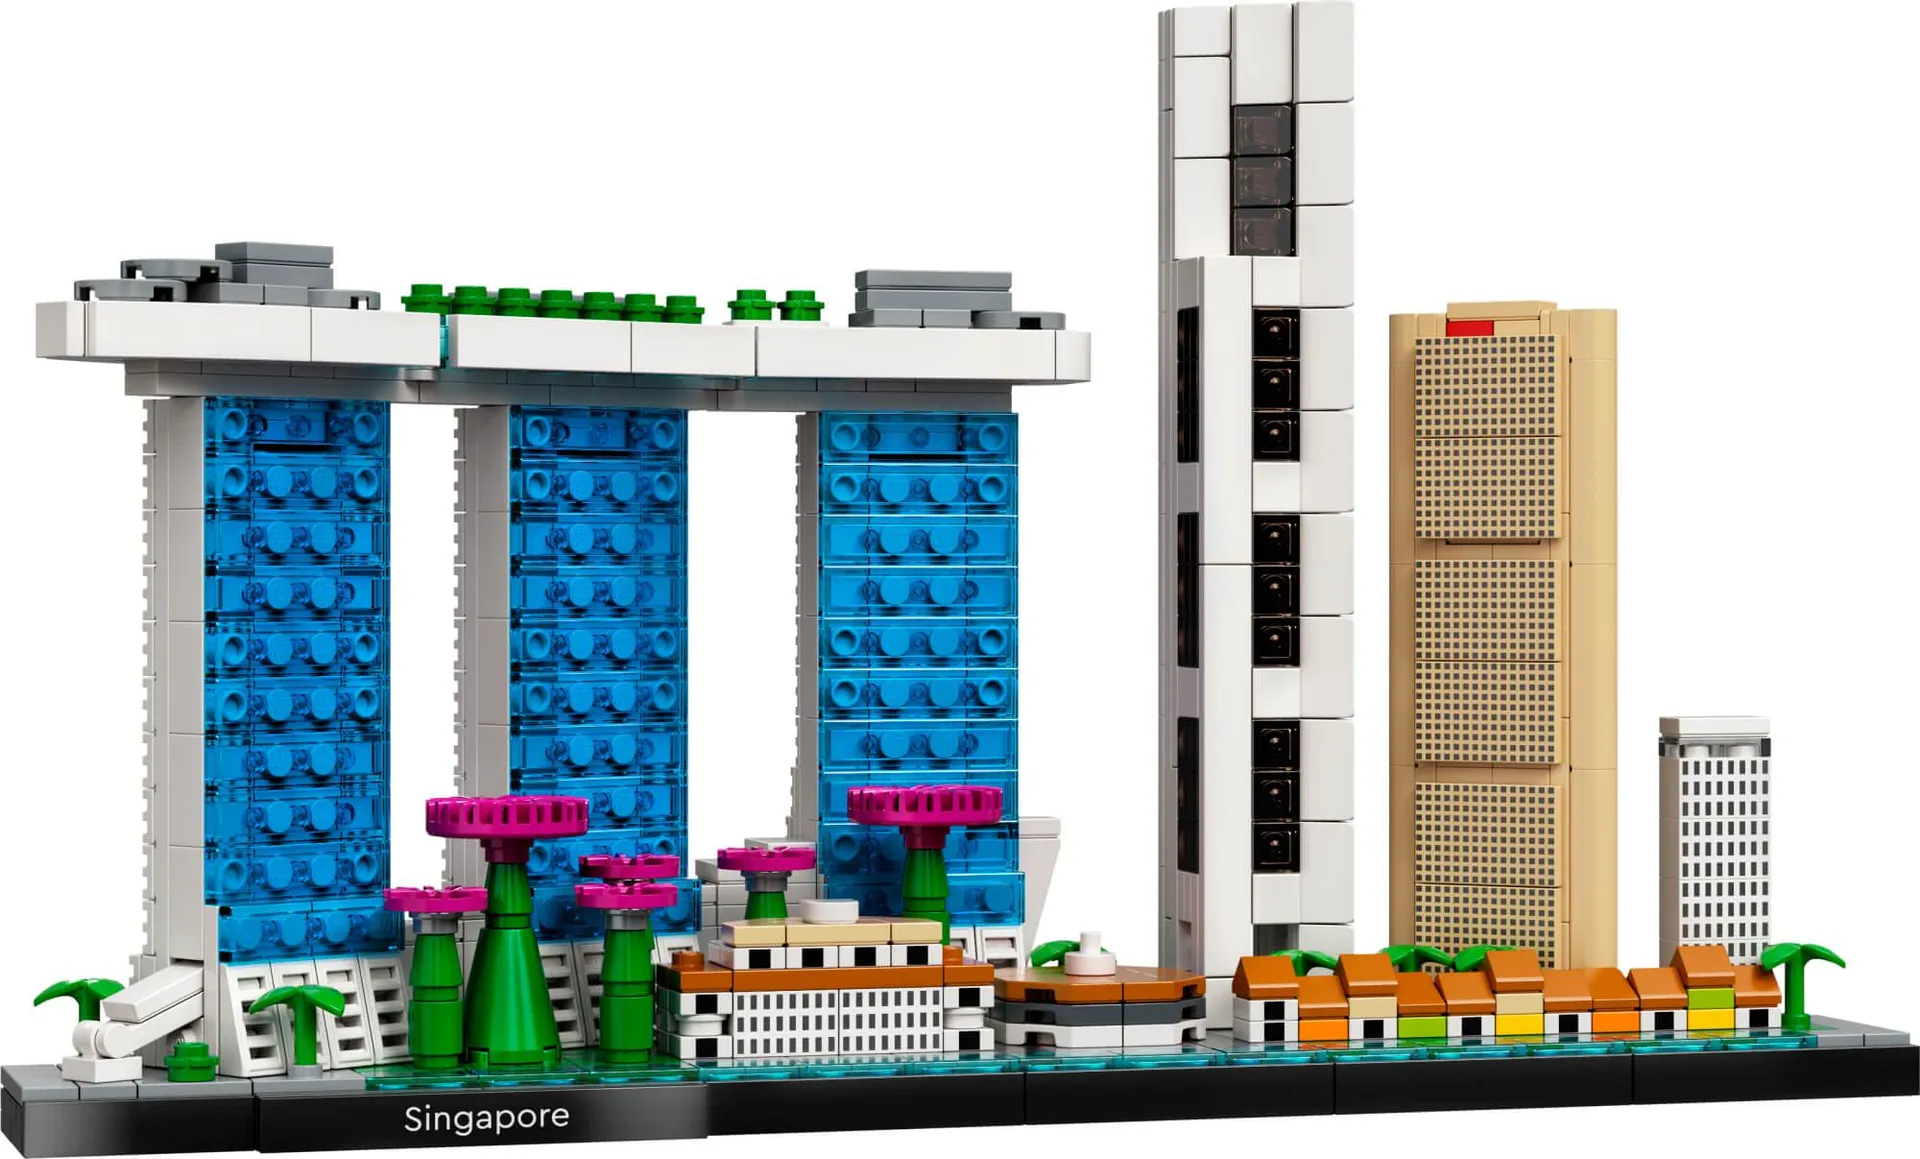 Architecture - Singapura